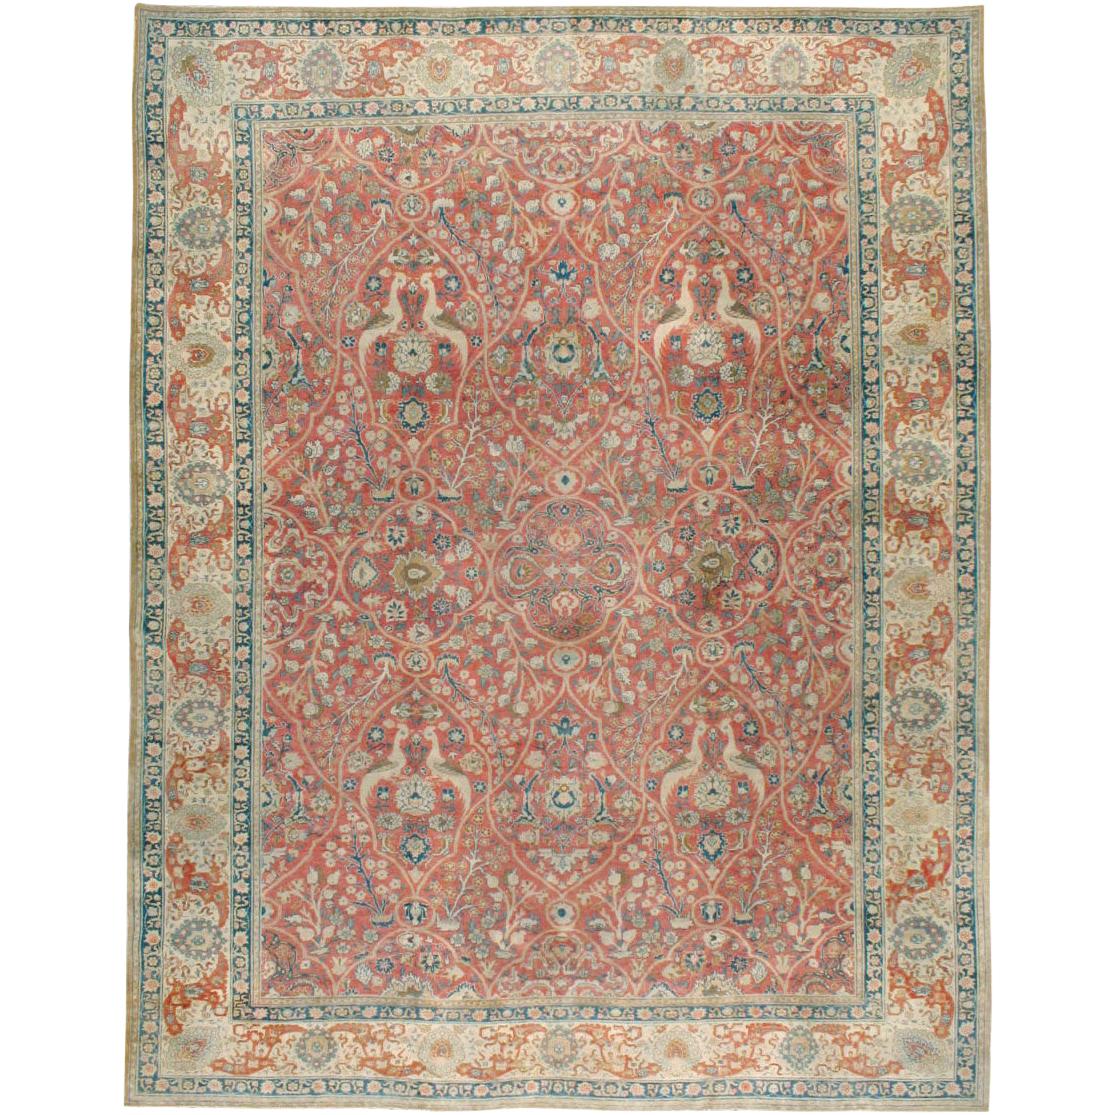 Handgefertigter persischer, malerischer Täbris-Teppich in Zimmergröße aus dem frühen 20. Jahrhundert